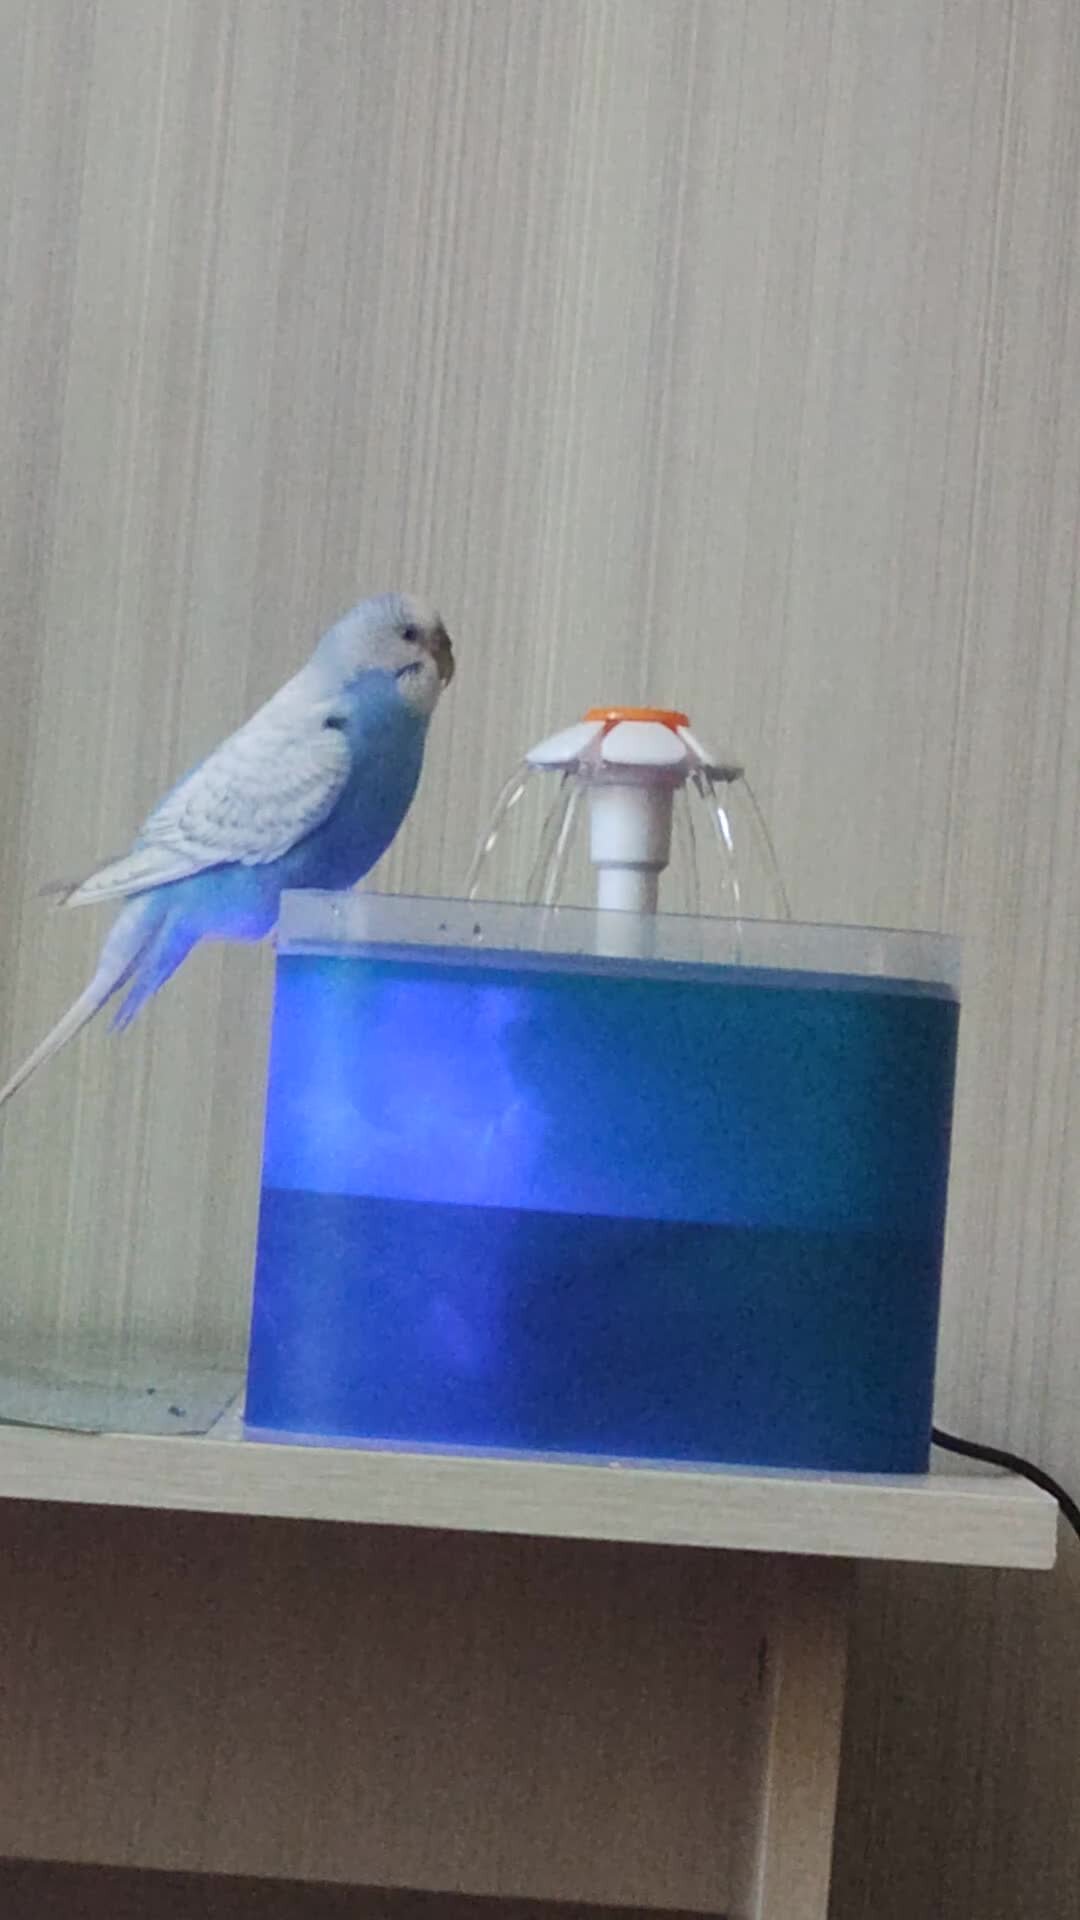 Заказать купалку с фонтаном для попугаев в уральские-газоны.рф от руб. за штуку